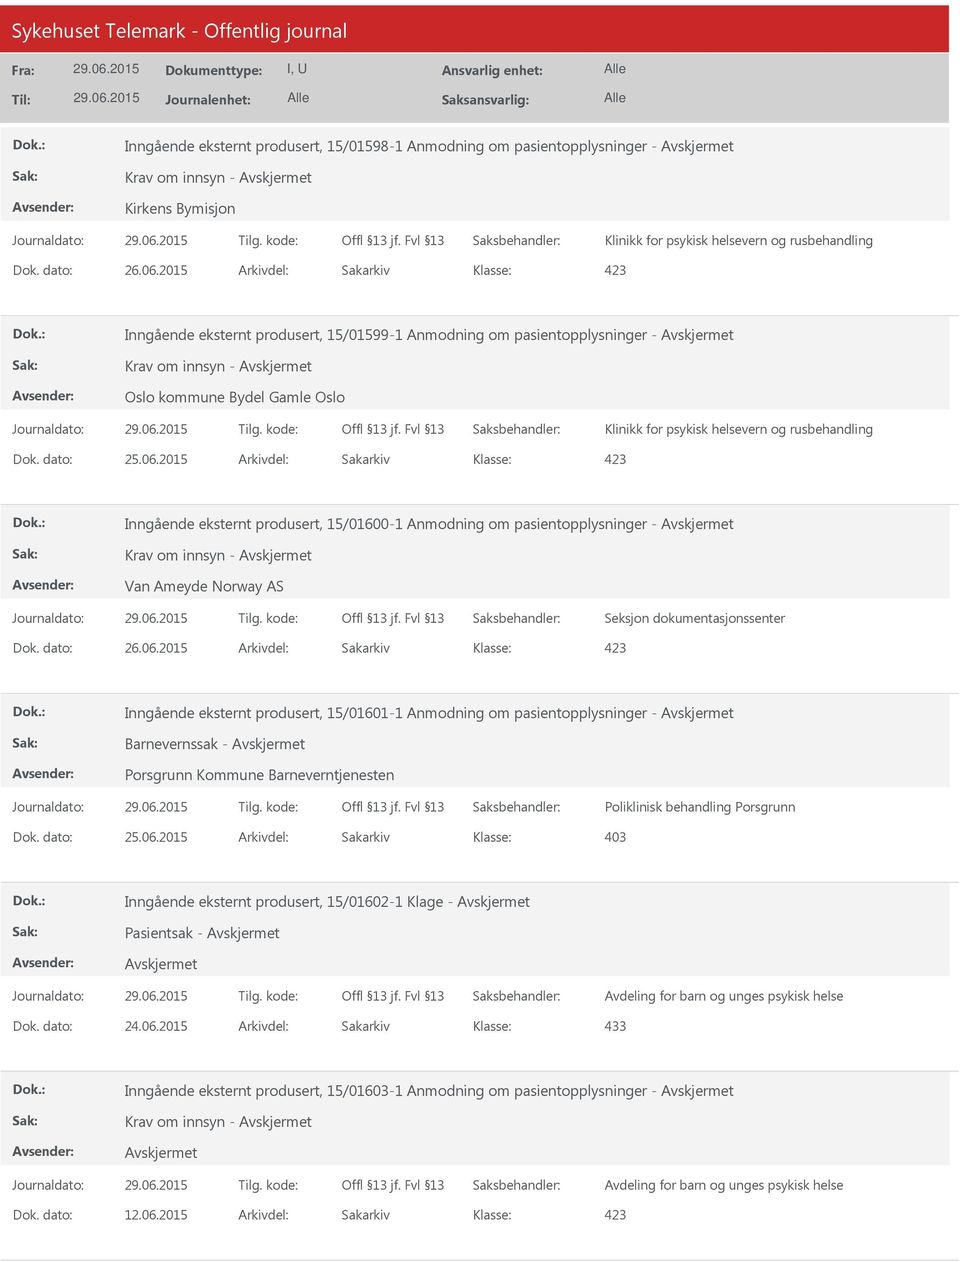 2015 Arkivdel: Sakarkiv Inngående eksternt produsert, 15/01600-1 Anmodning om pasientopplysninger - Krav om innsyn - Van Ameyde Norway AS Inngående eksternt produsert, 15/01601-1 Anmodning om